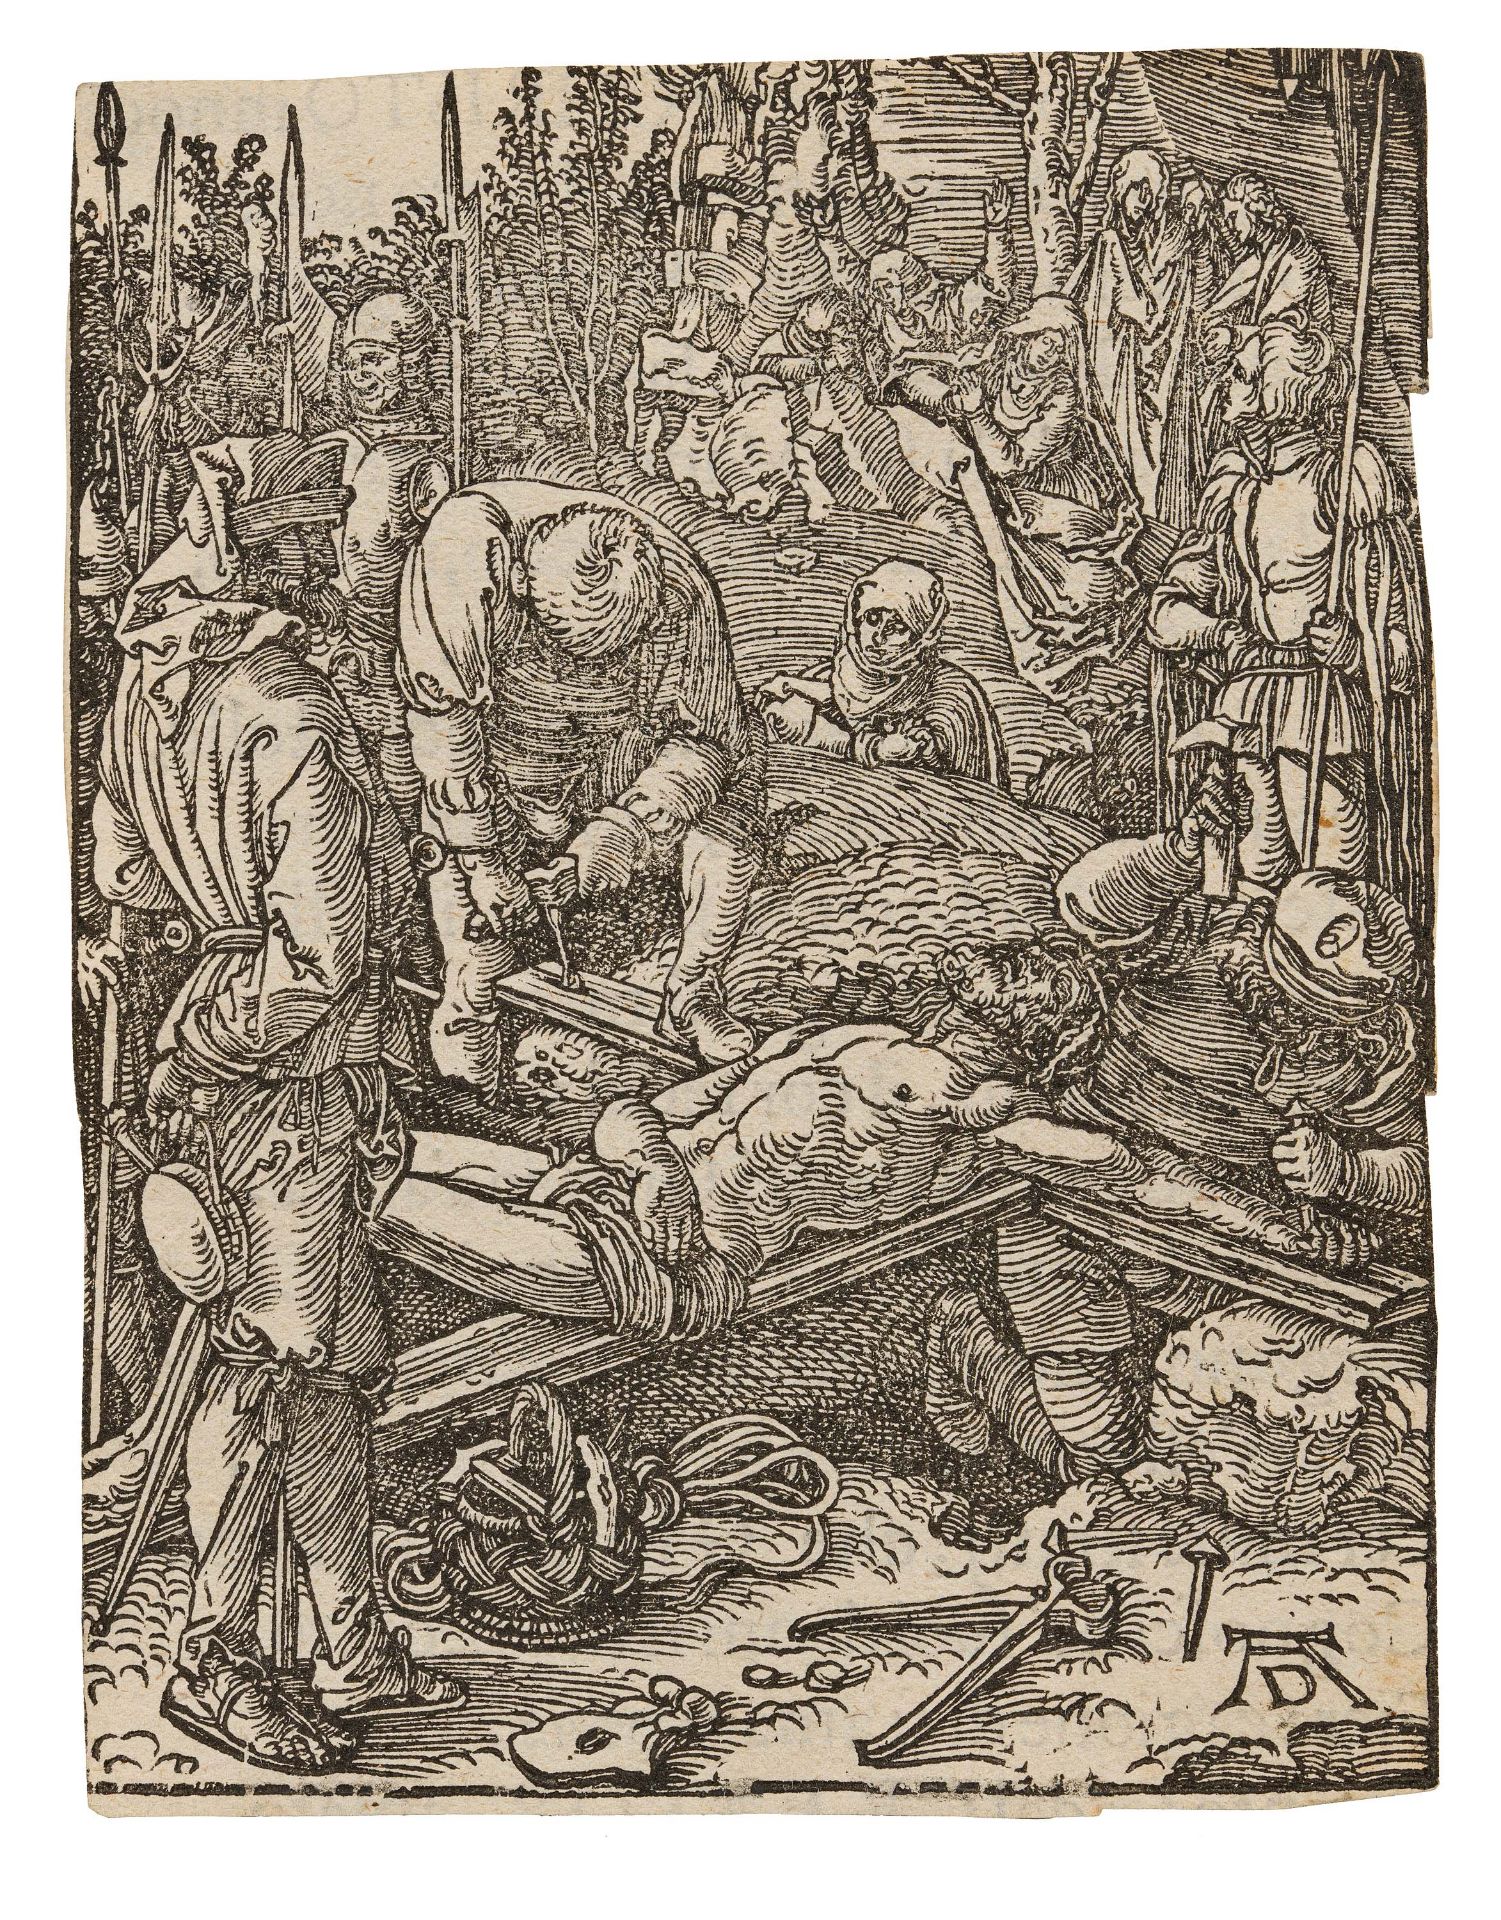 Albrecht Dürer. Christ being Nailed to the Cross